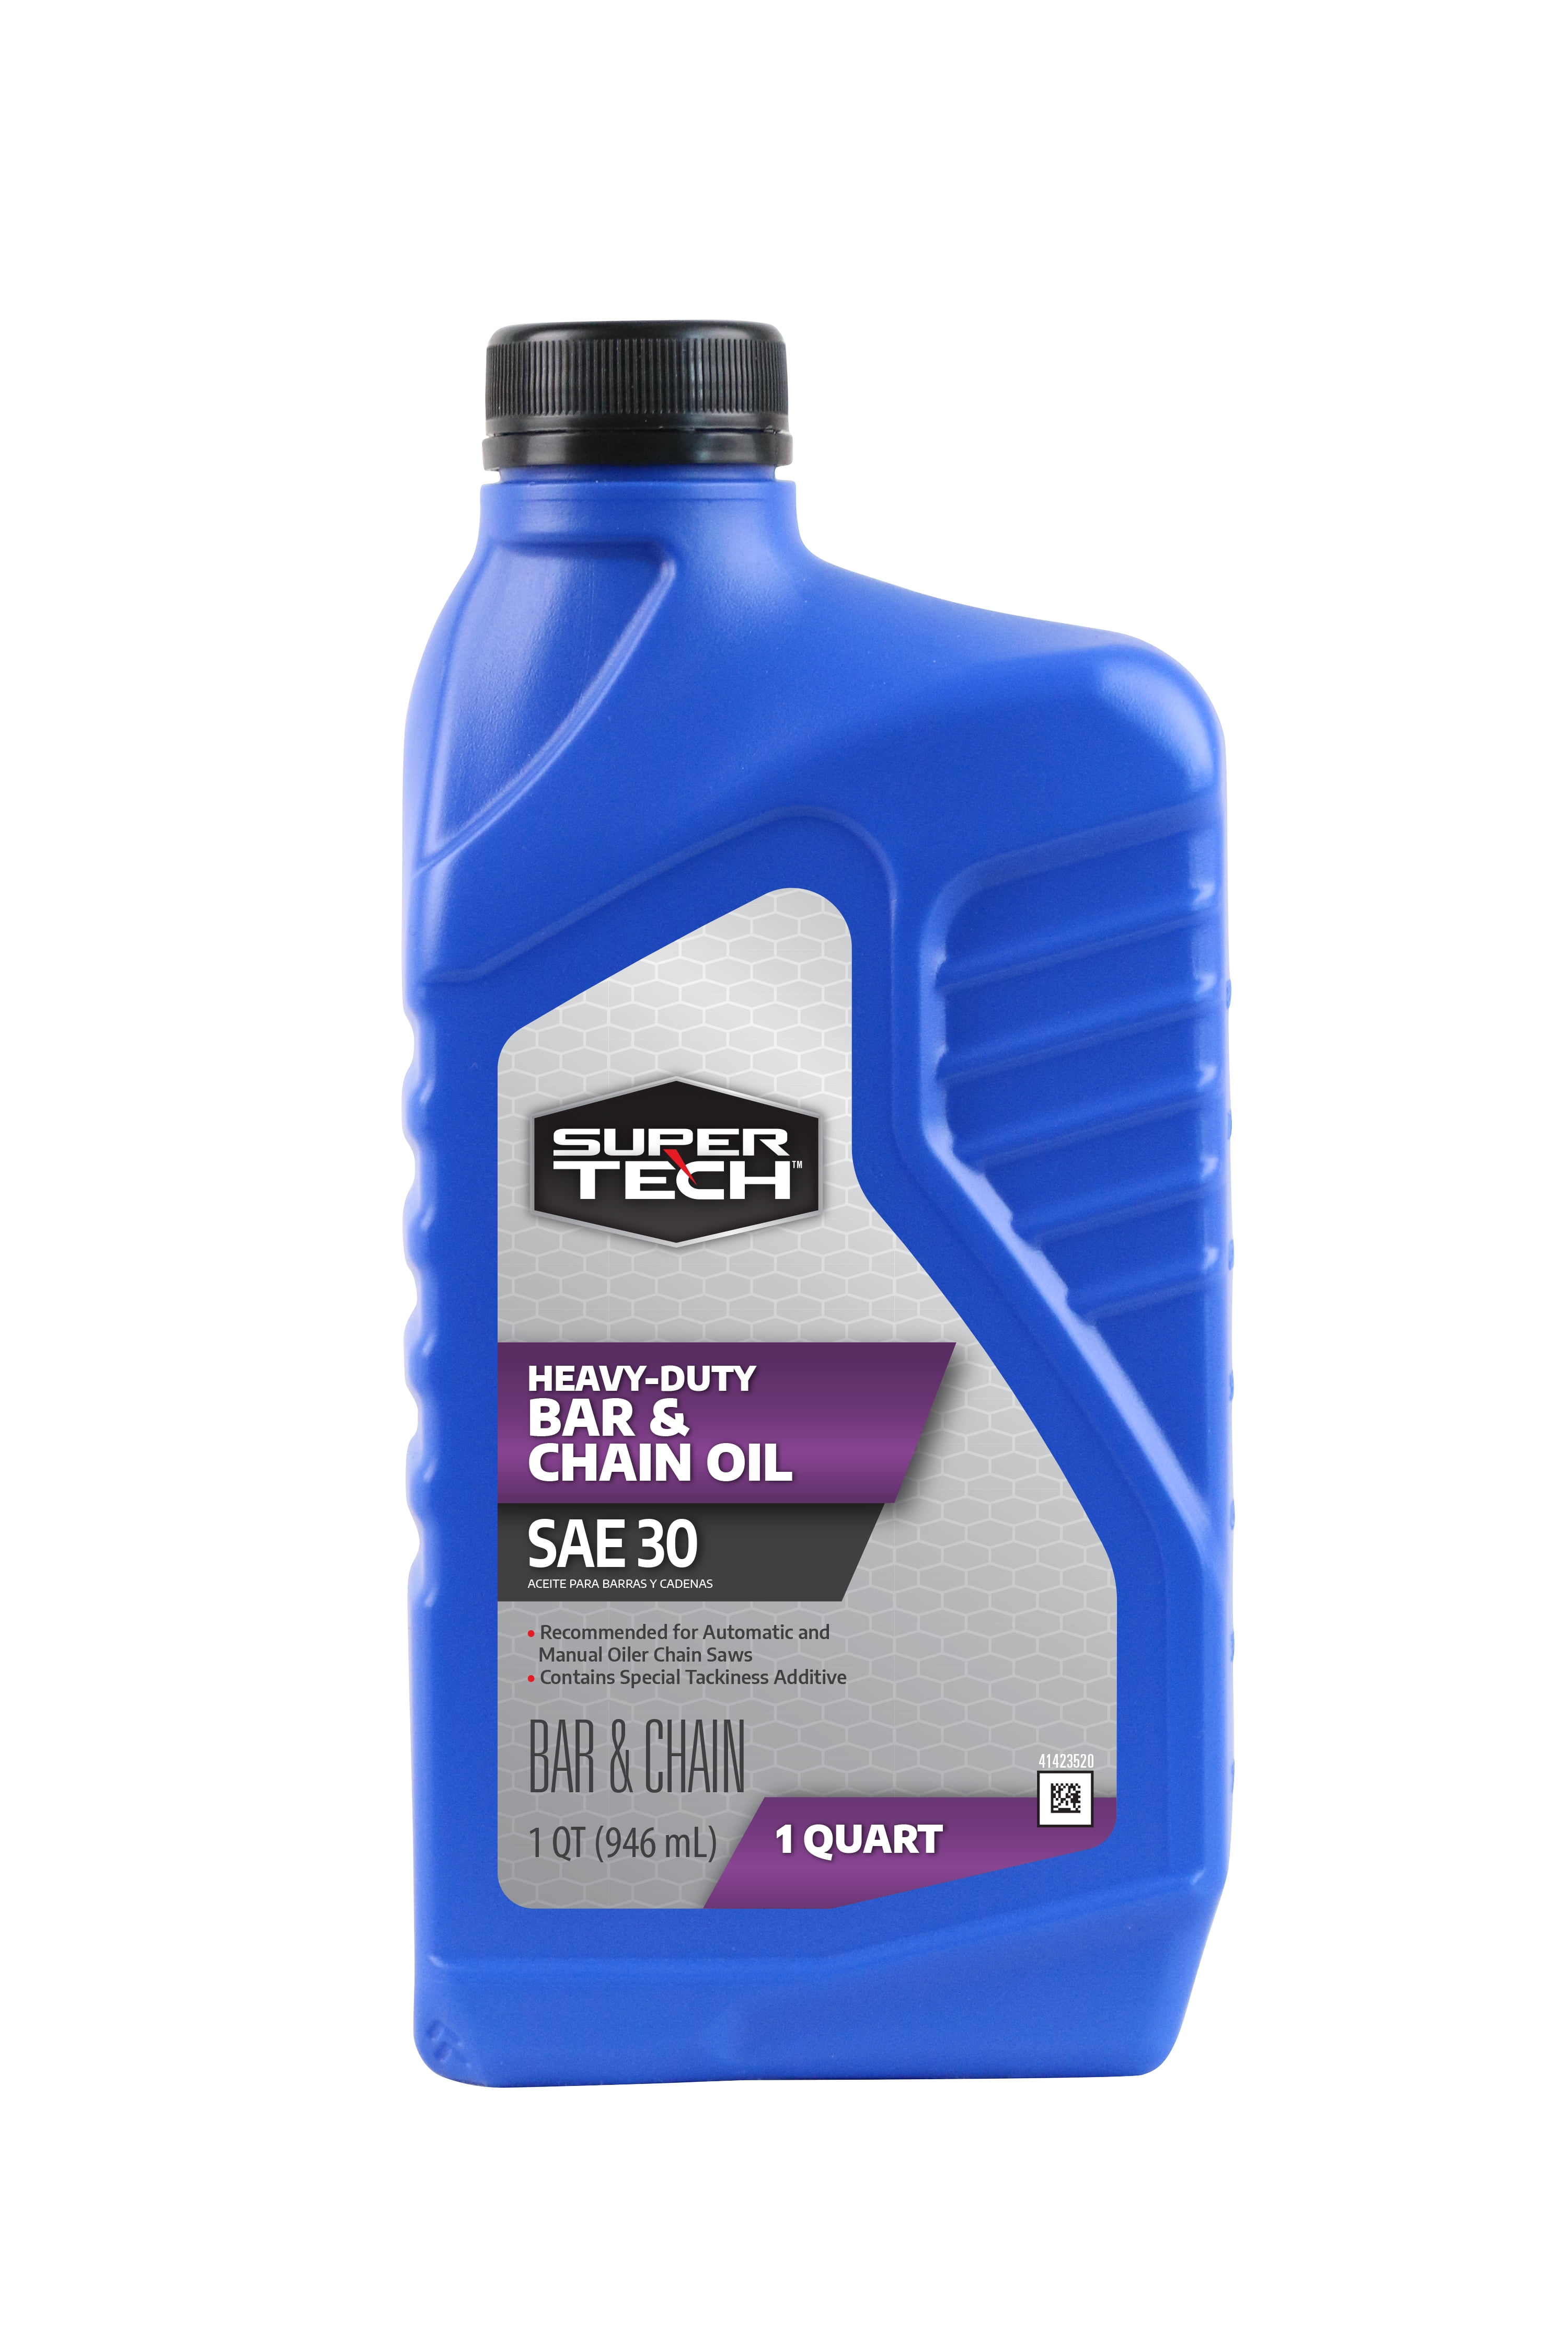 Super Tech SAE 30 Bar and Chain Oil, 1 Quart Bottle